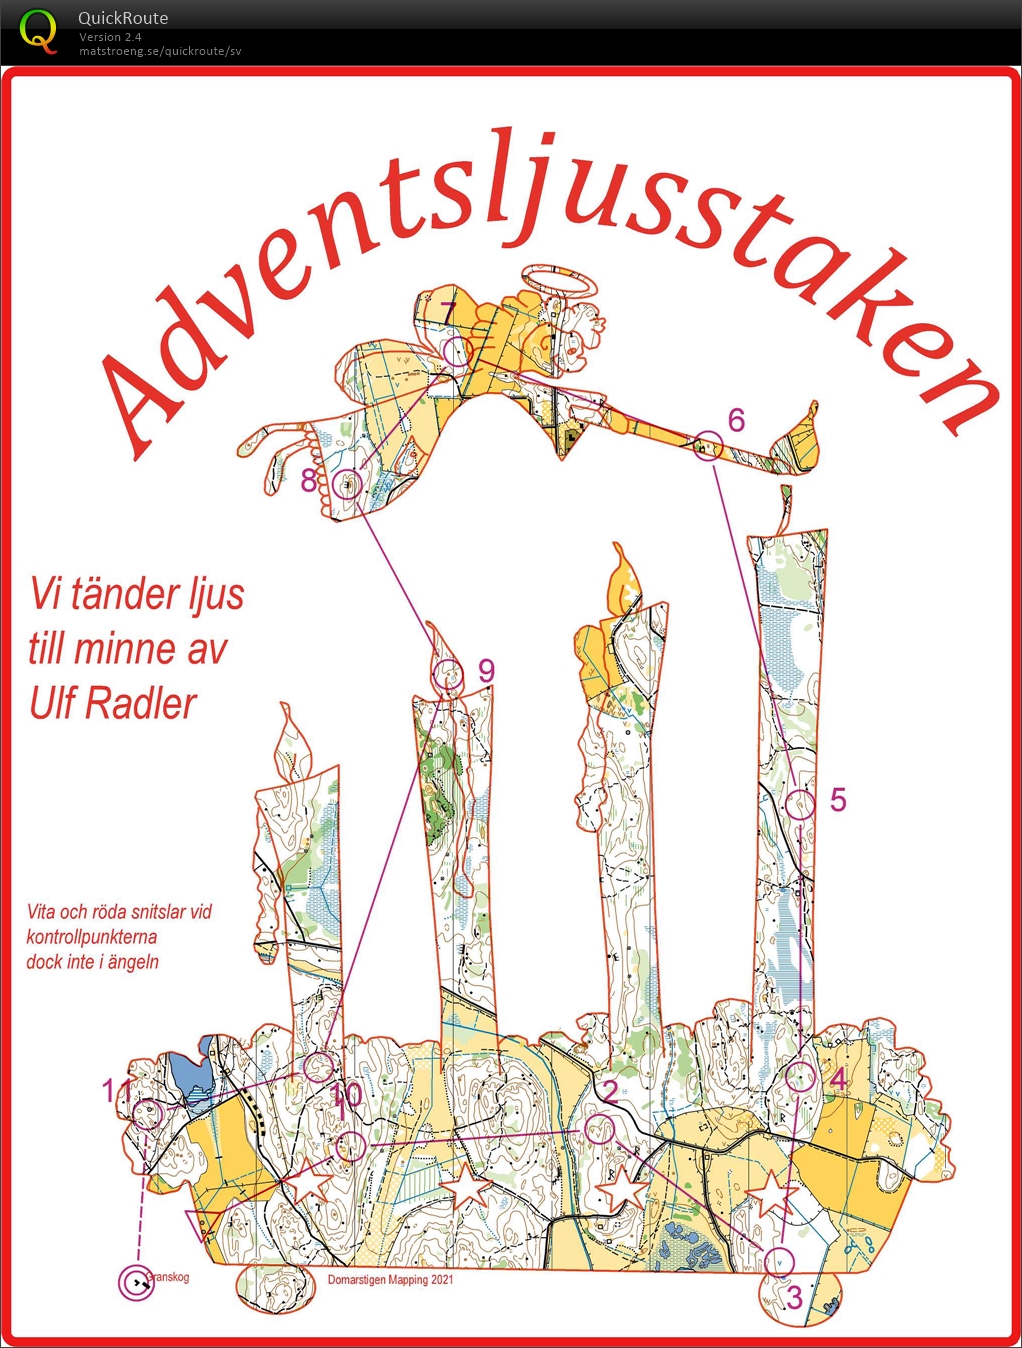 Adventsljusstaken - till minne av Ulf Radler (19.12.2021)